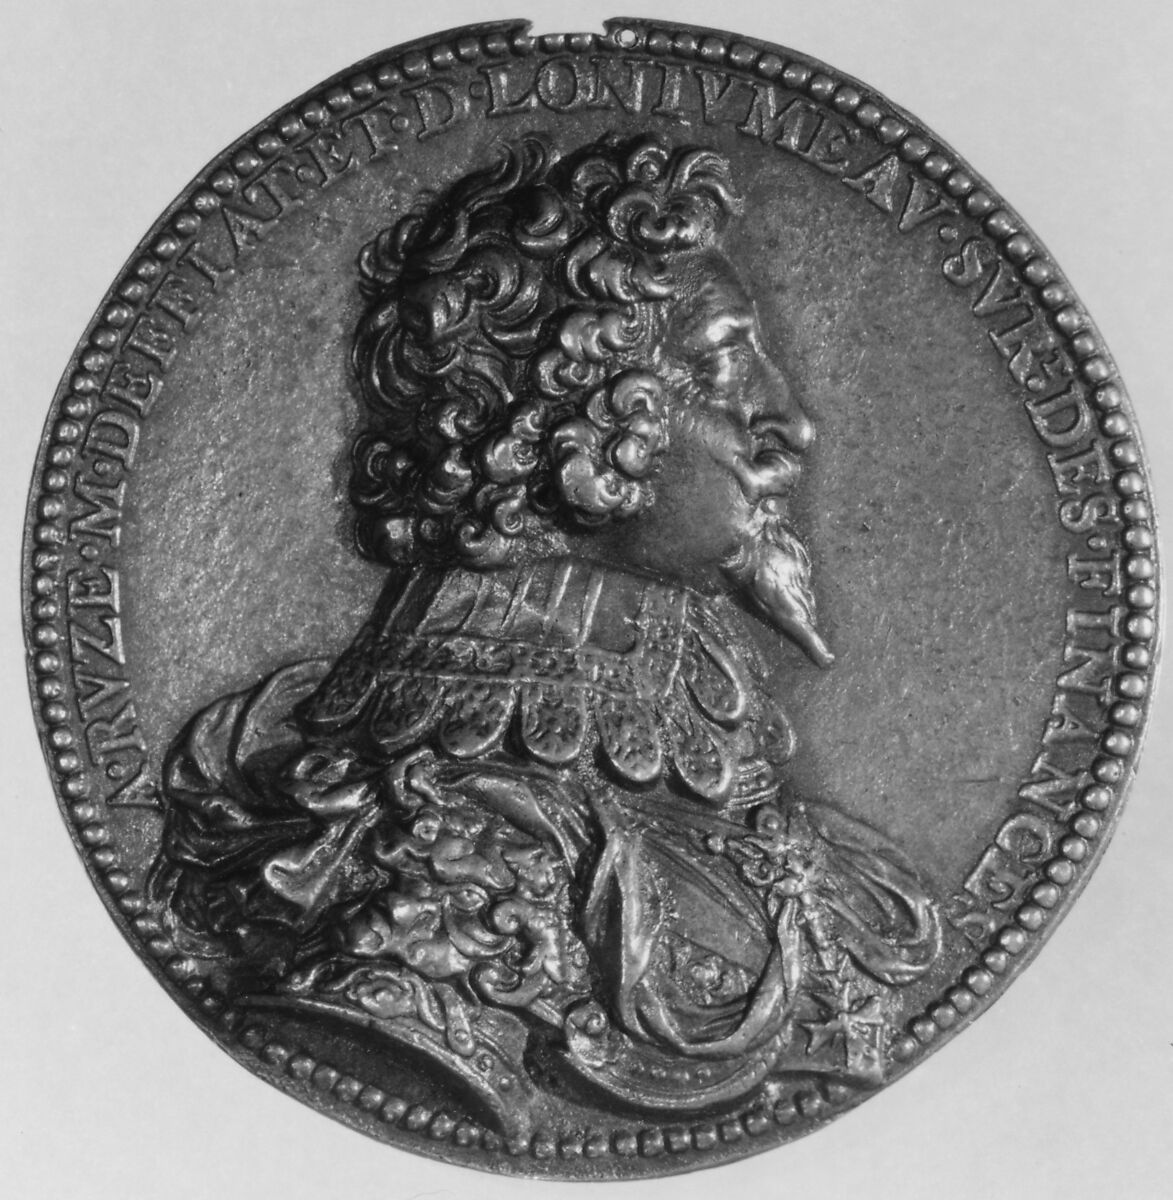 Antoine de Ruzé, Marquis of Effiat and Longjumeau, superintendant of finances (1626), Medalist: Jean Varin (French, Liège baptized 1607–1672 Paris), Bronze, French, Paris 